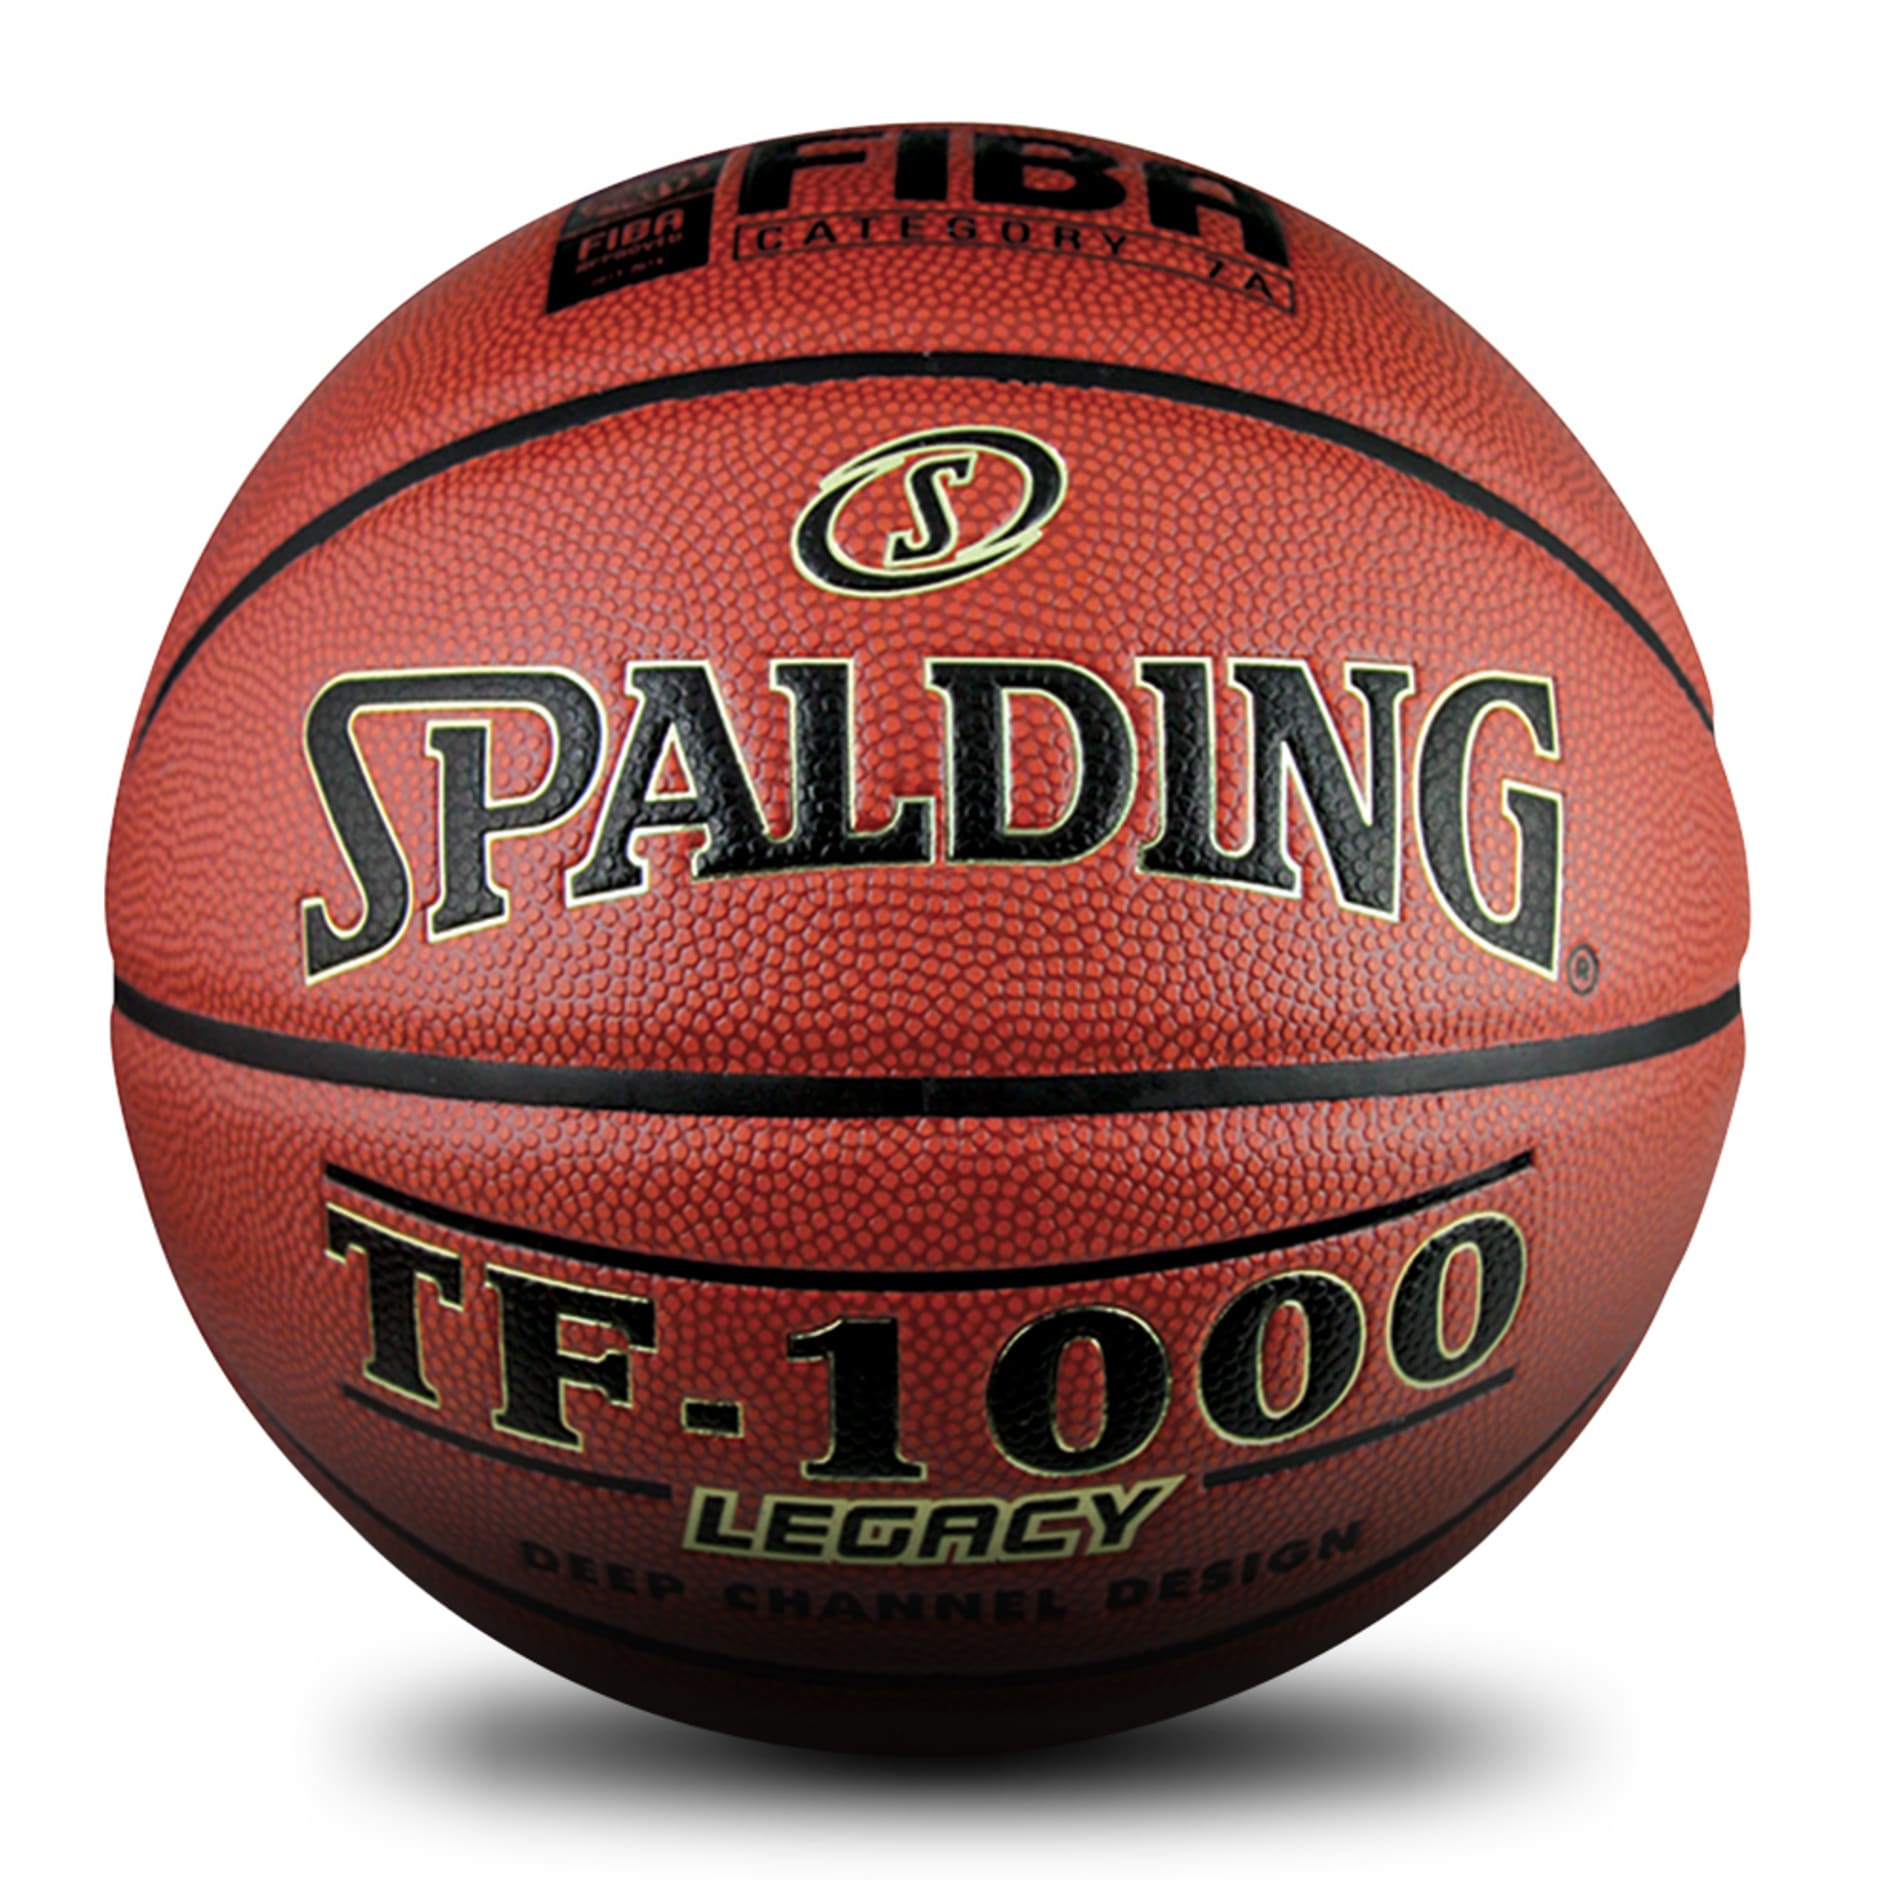 TF-1000 Legacy Basketball